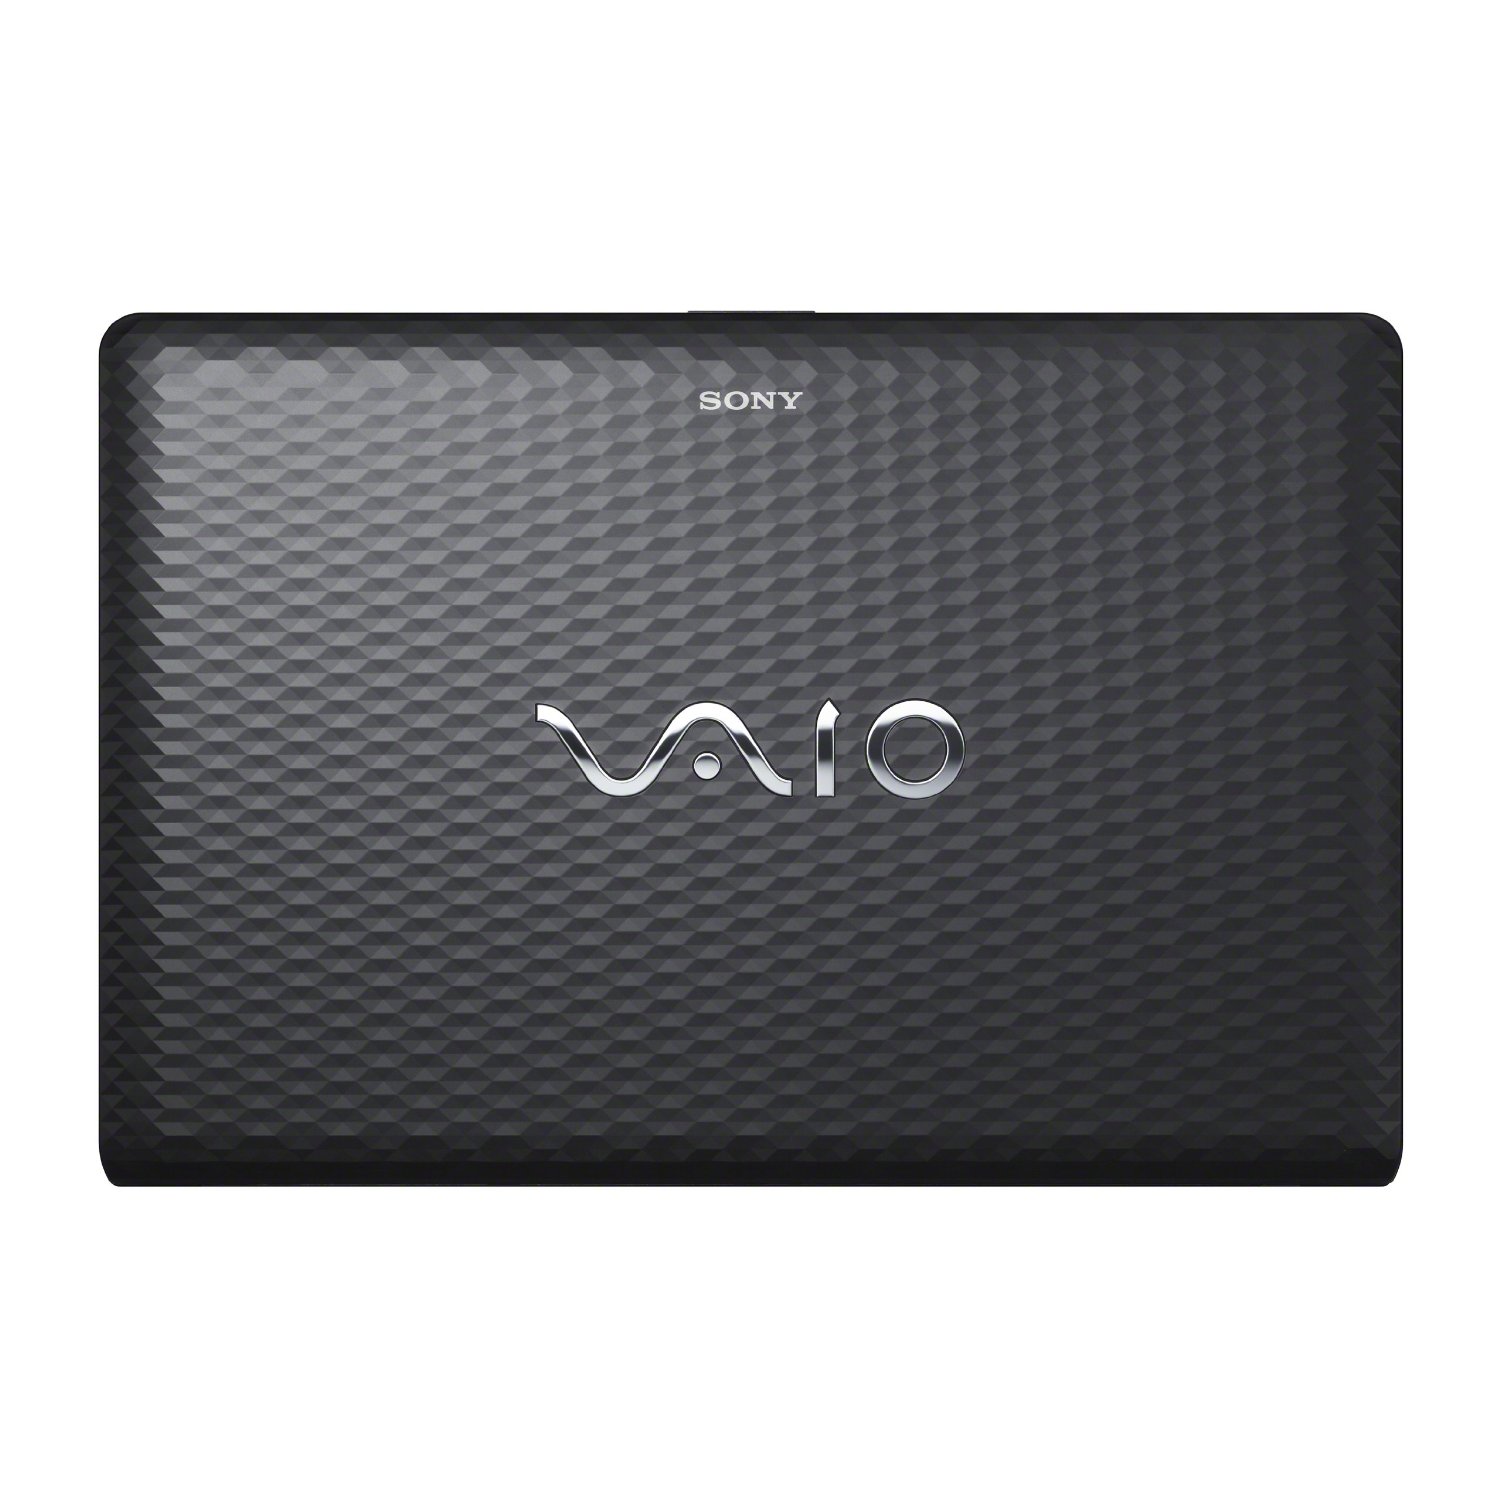 Sony Vaio VPC-EJ Series - Notebookcheck.net External Reviews